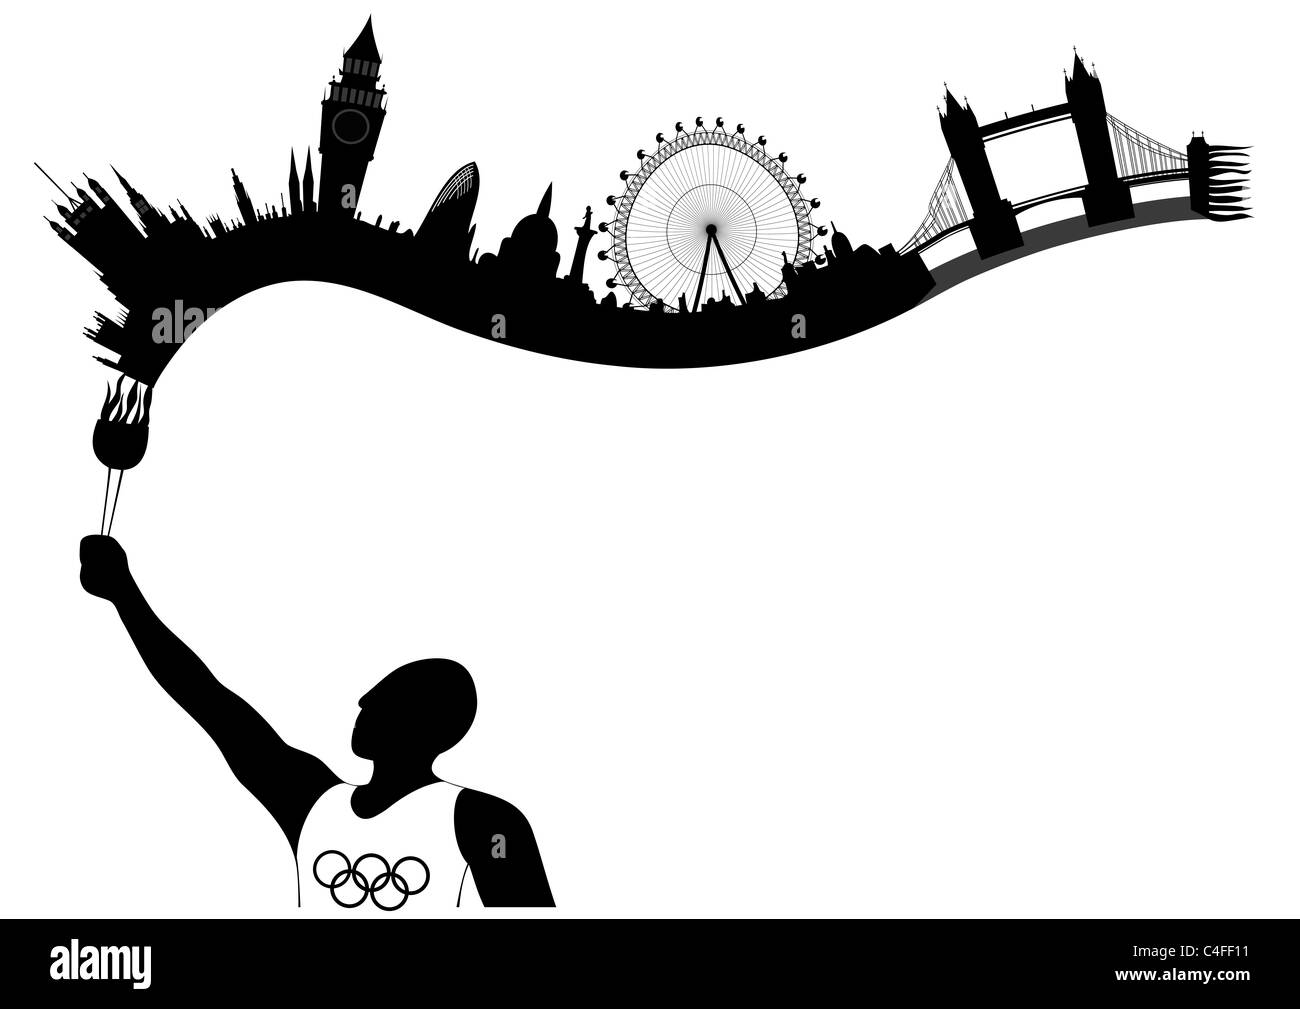 E astratta allegoria illustrazione - intramontabile fiamma olimpica - città olimpica - Londra Foto Stock